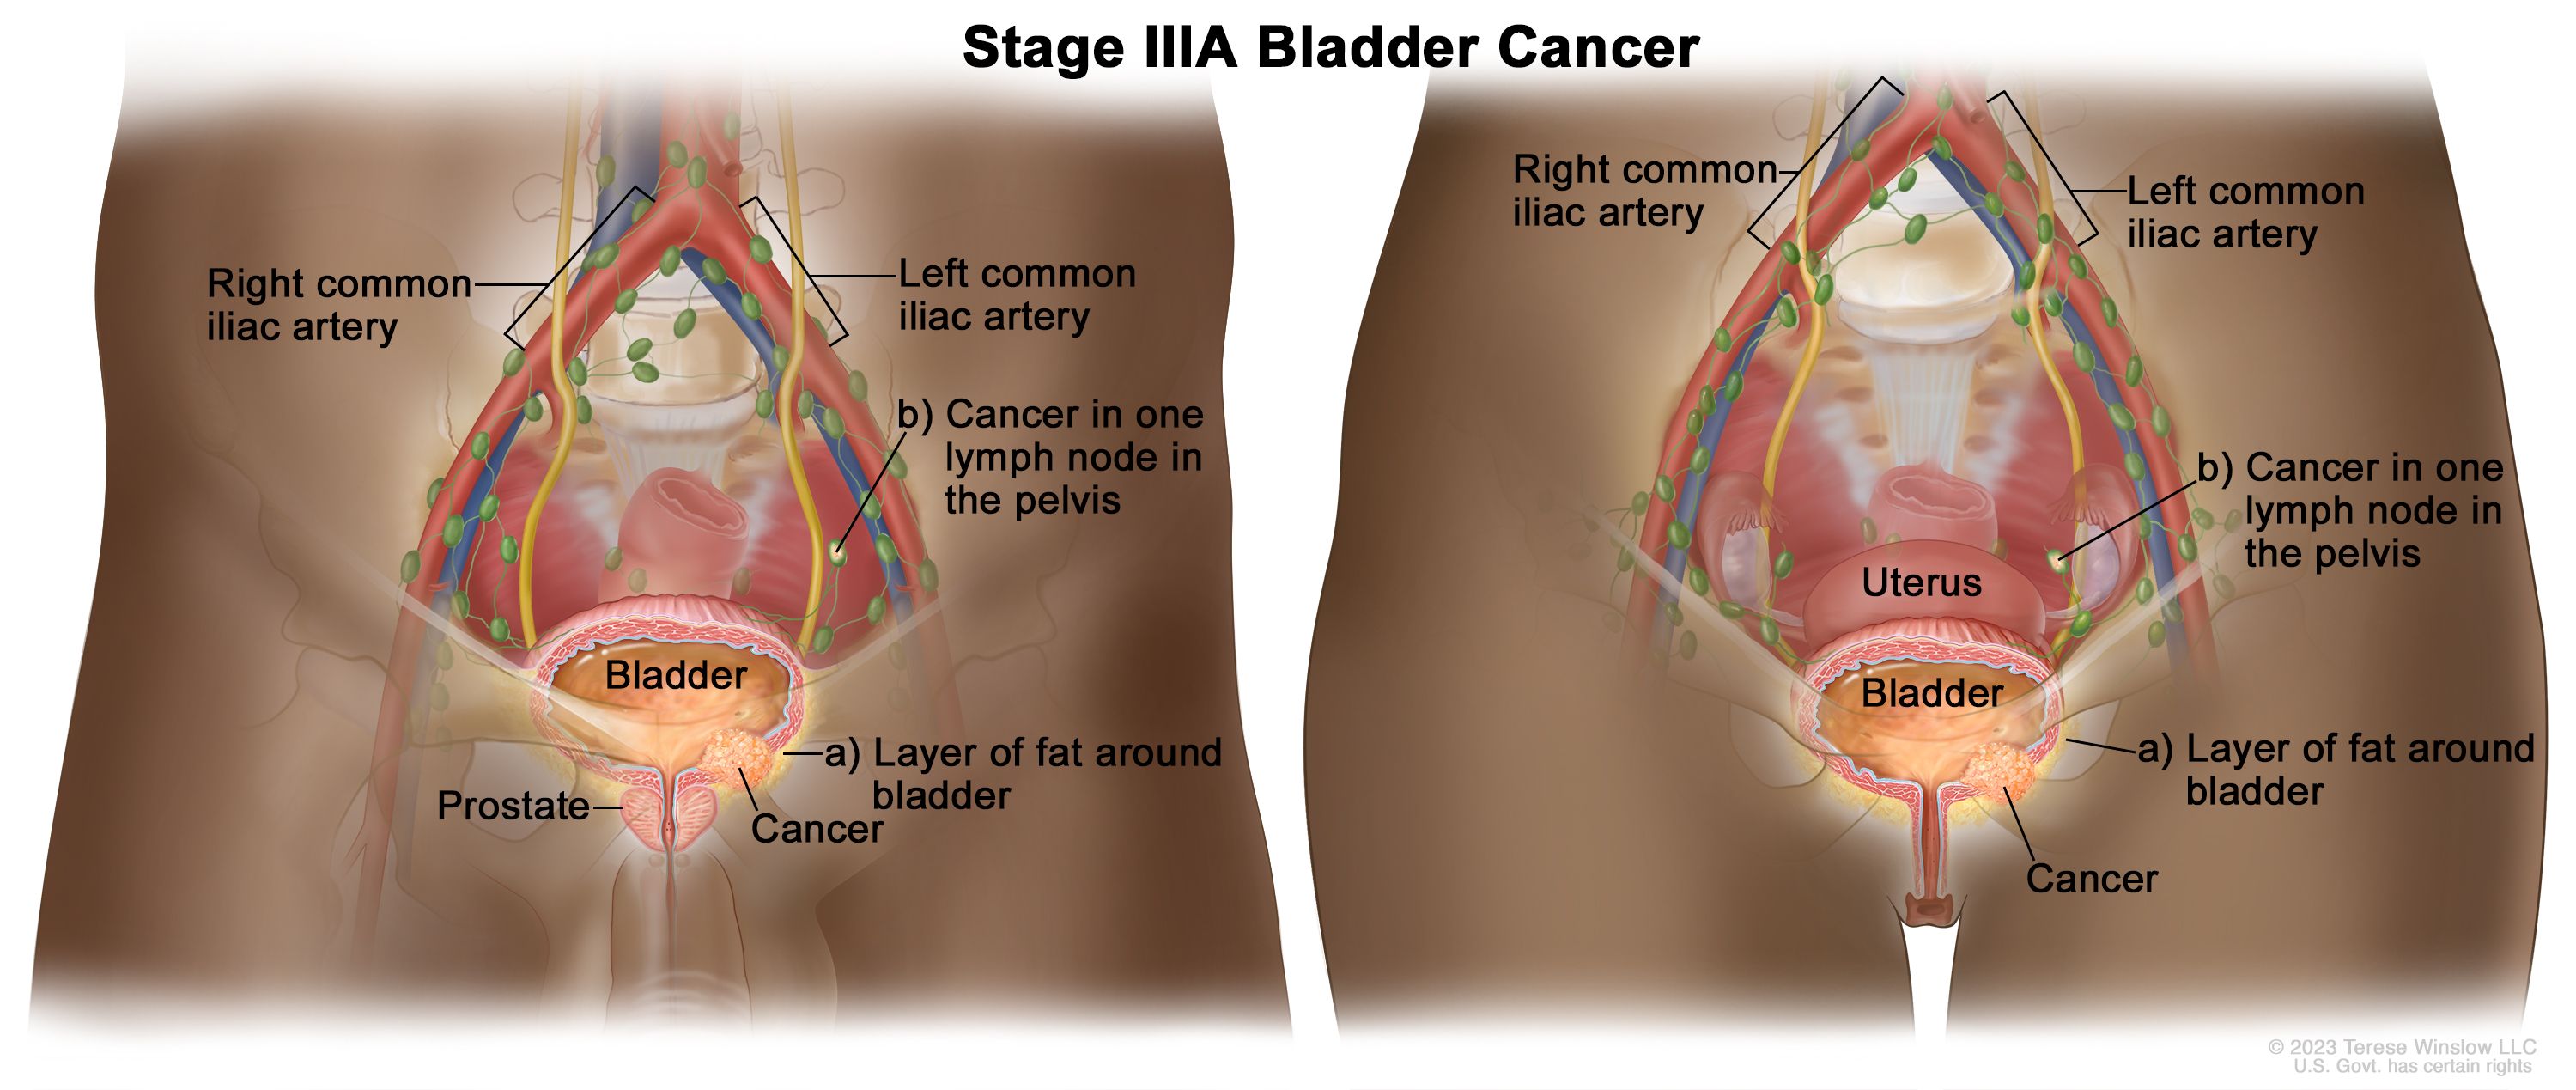 มะเร็งกระเพาะปัสสาวะระยะ IIIA